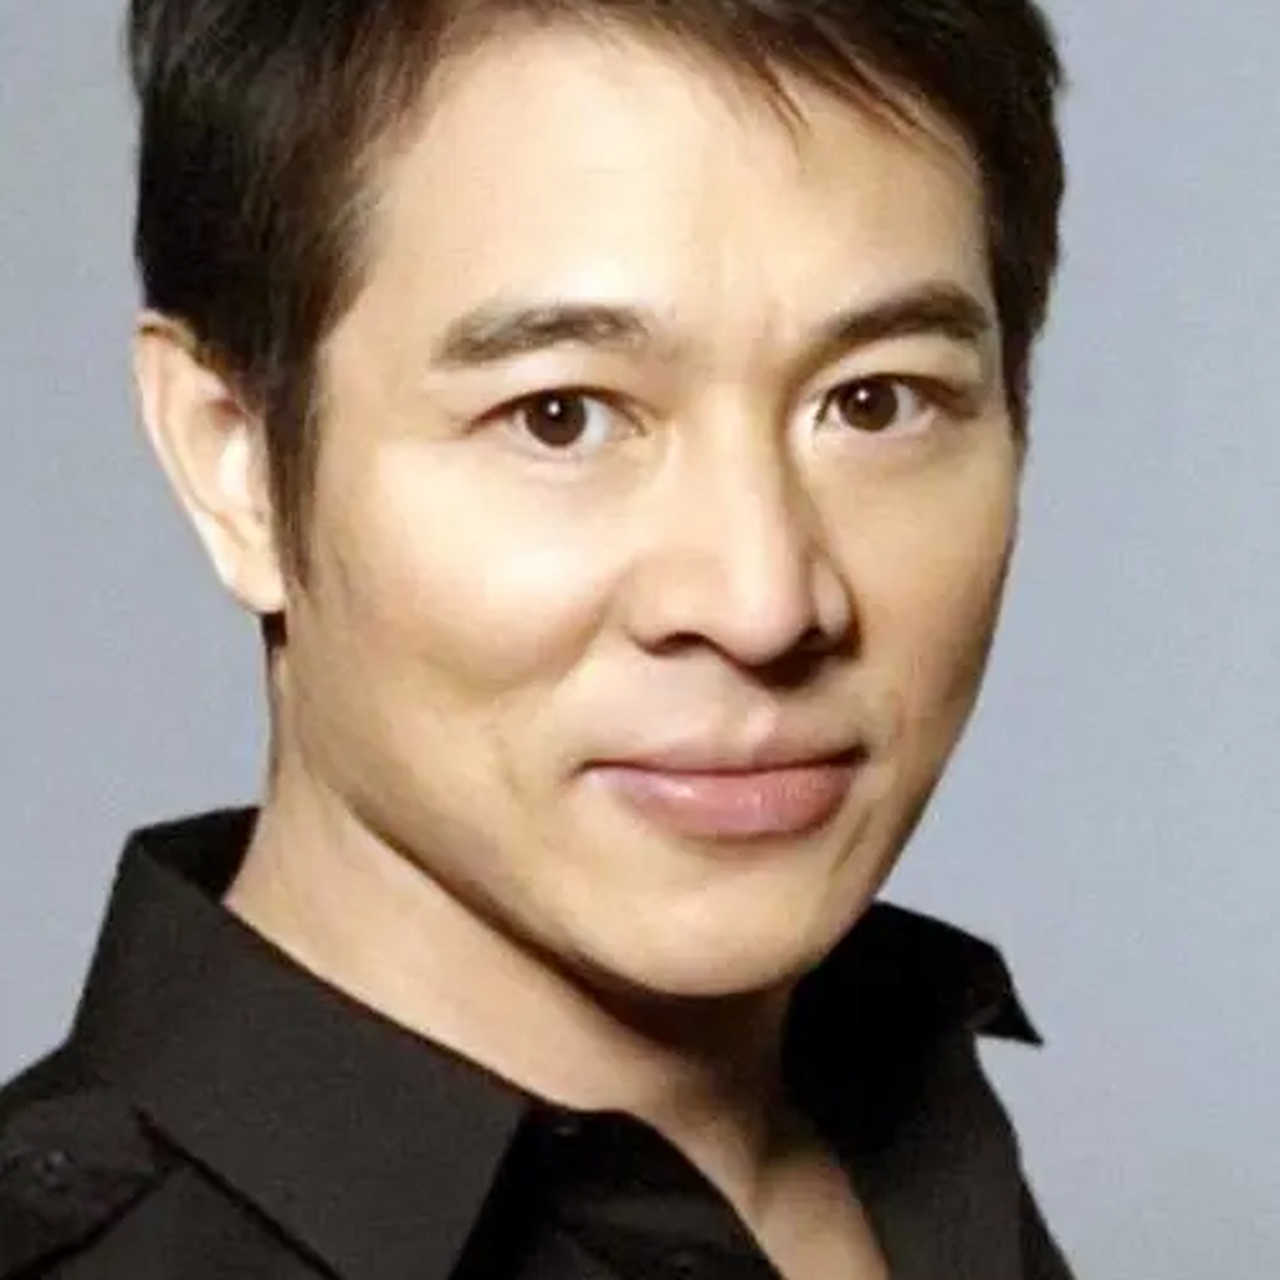 李连杰:功夫巨星 李连杰,原名李小龙,生于1963年4月26日,是中国香港的